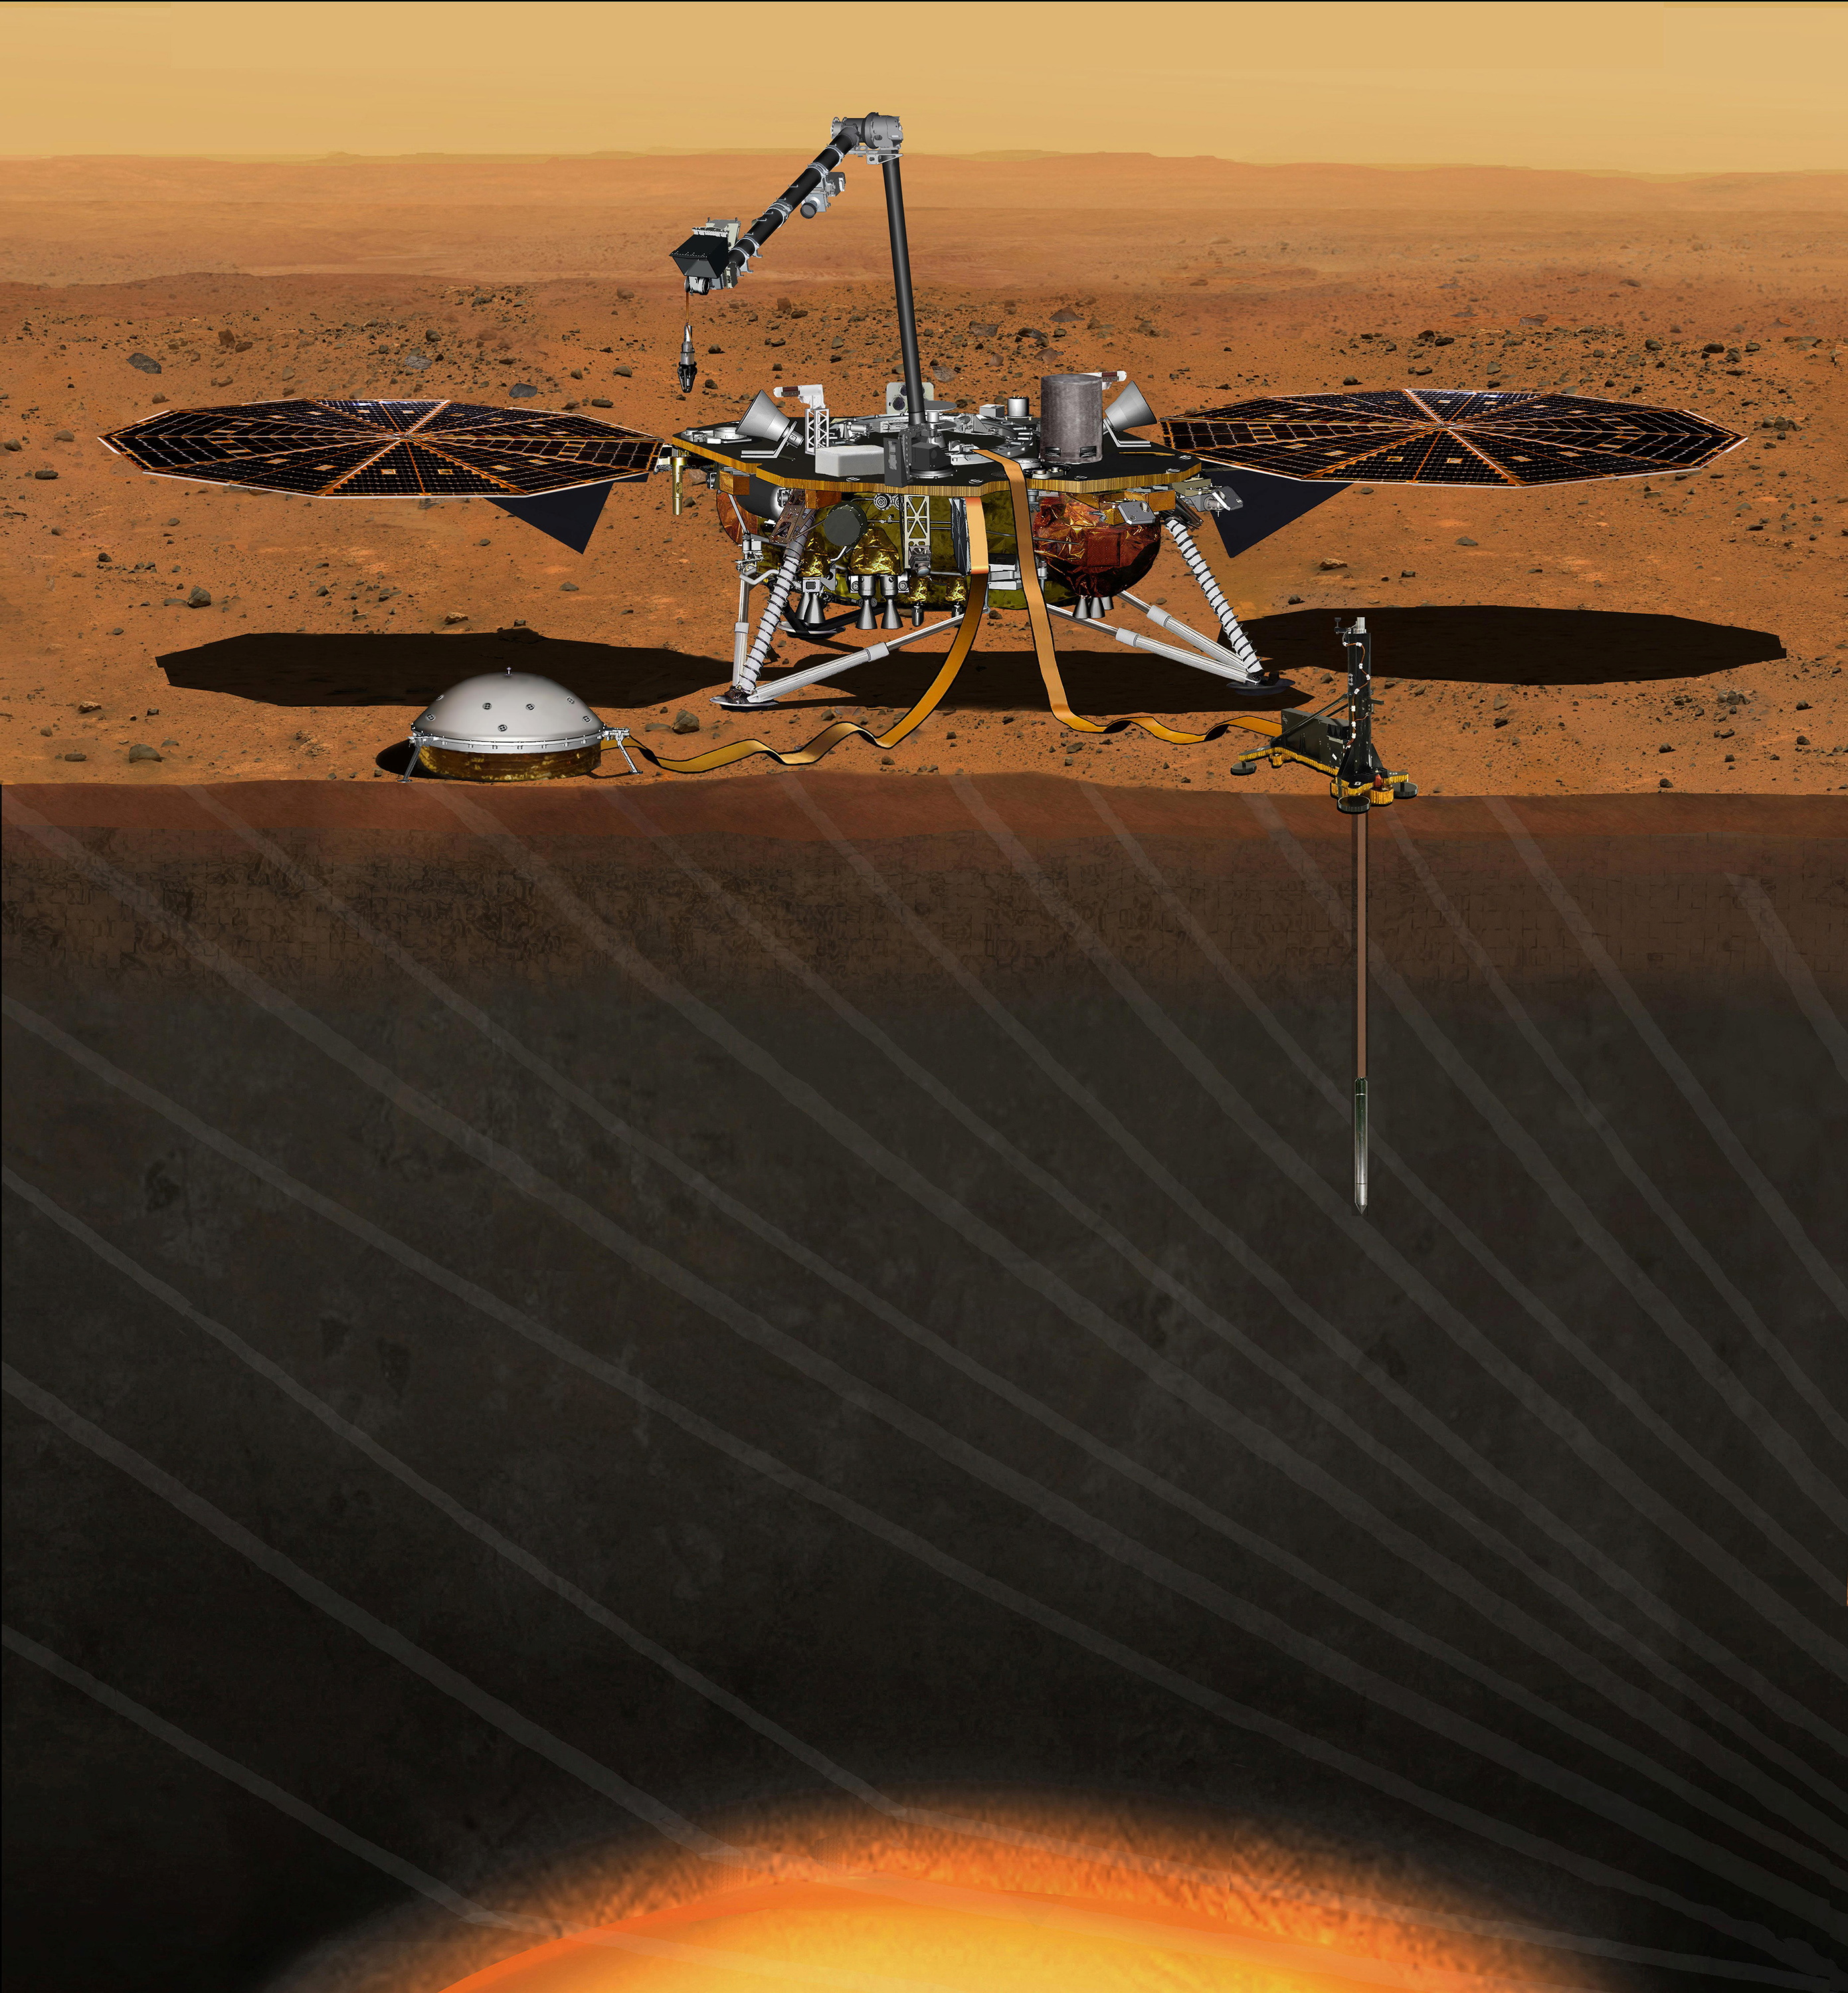 La misión estadounidense estudia las ondas sísmicas para aprender más sobre el interior de Marte.   REUTERS/NASA/JPL-Caltech/Handout 